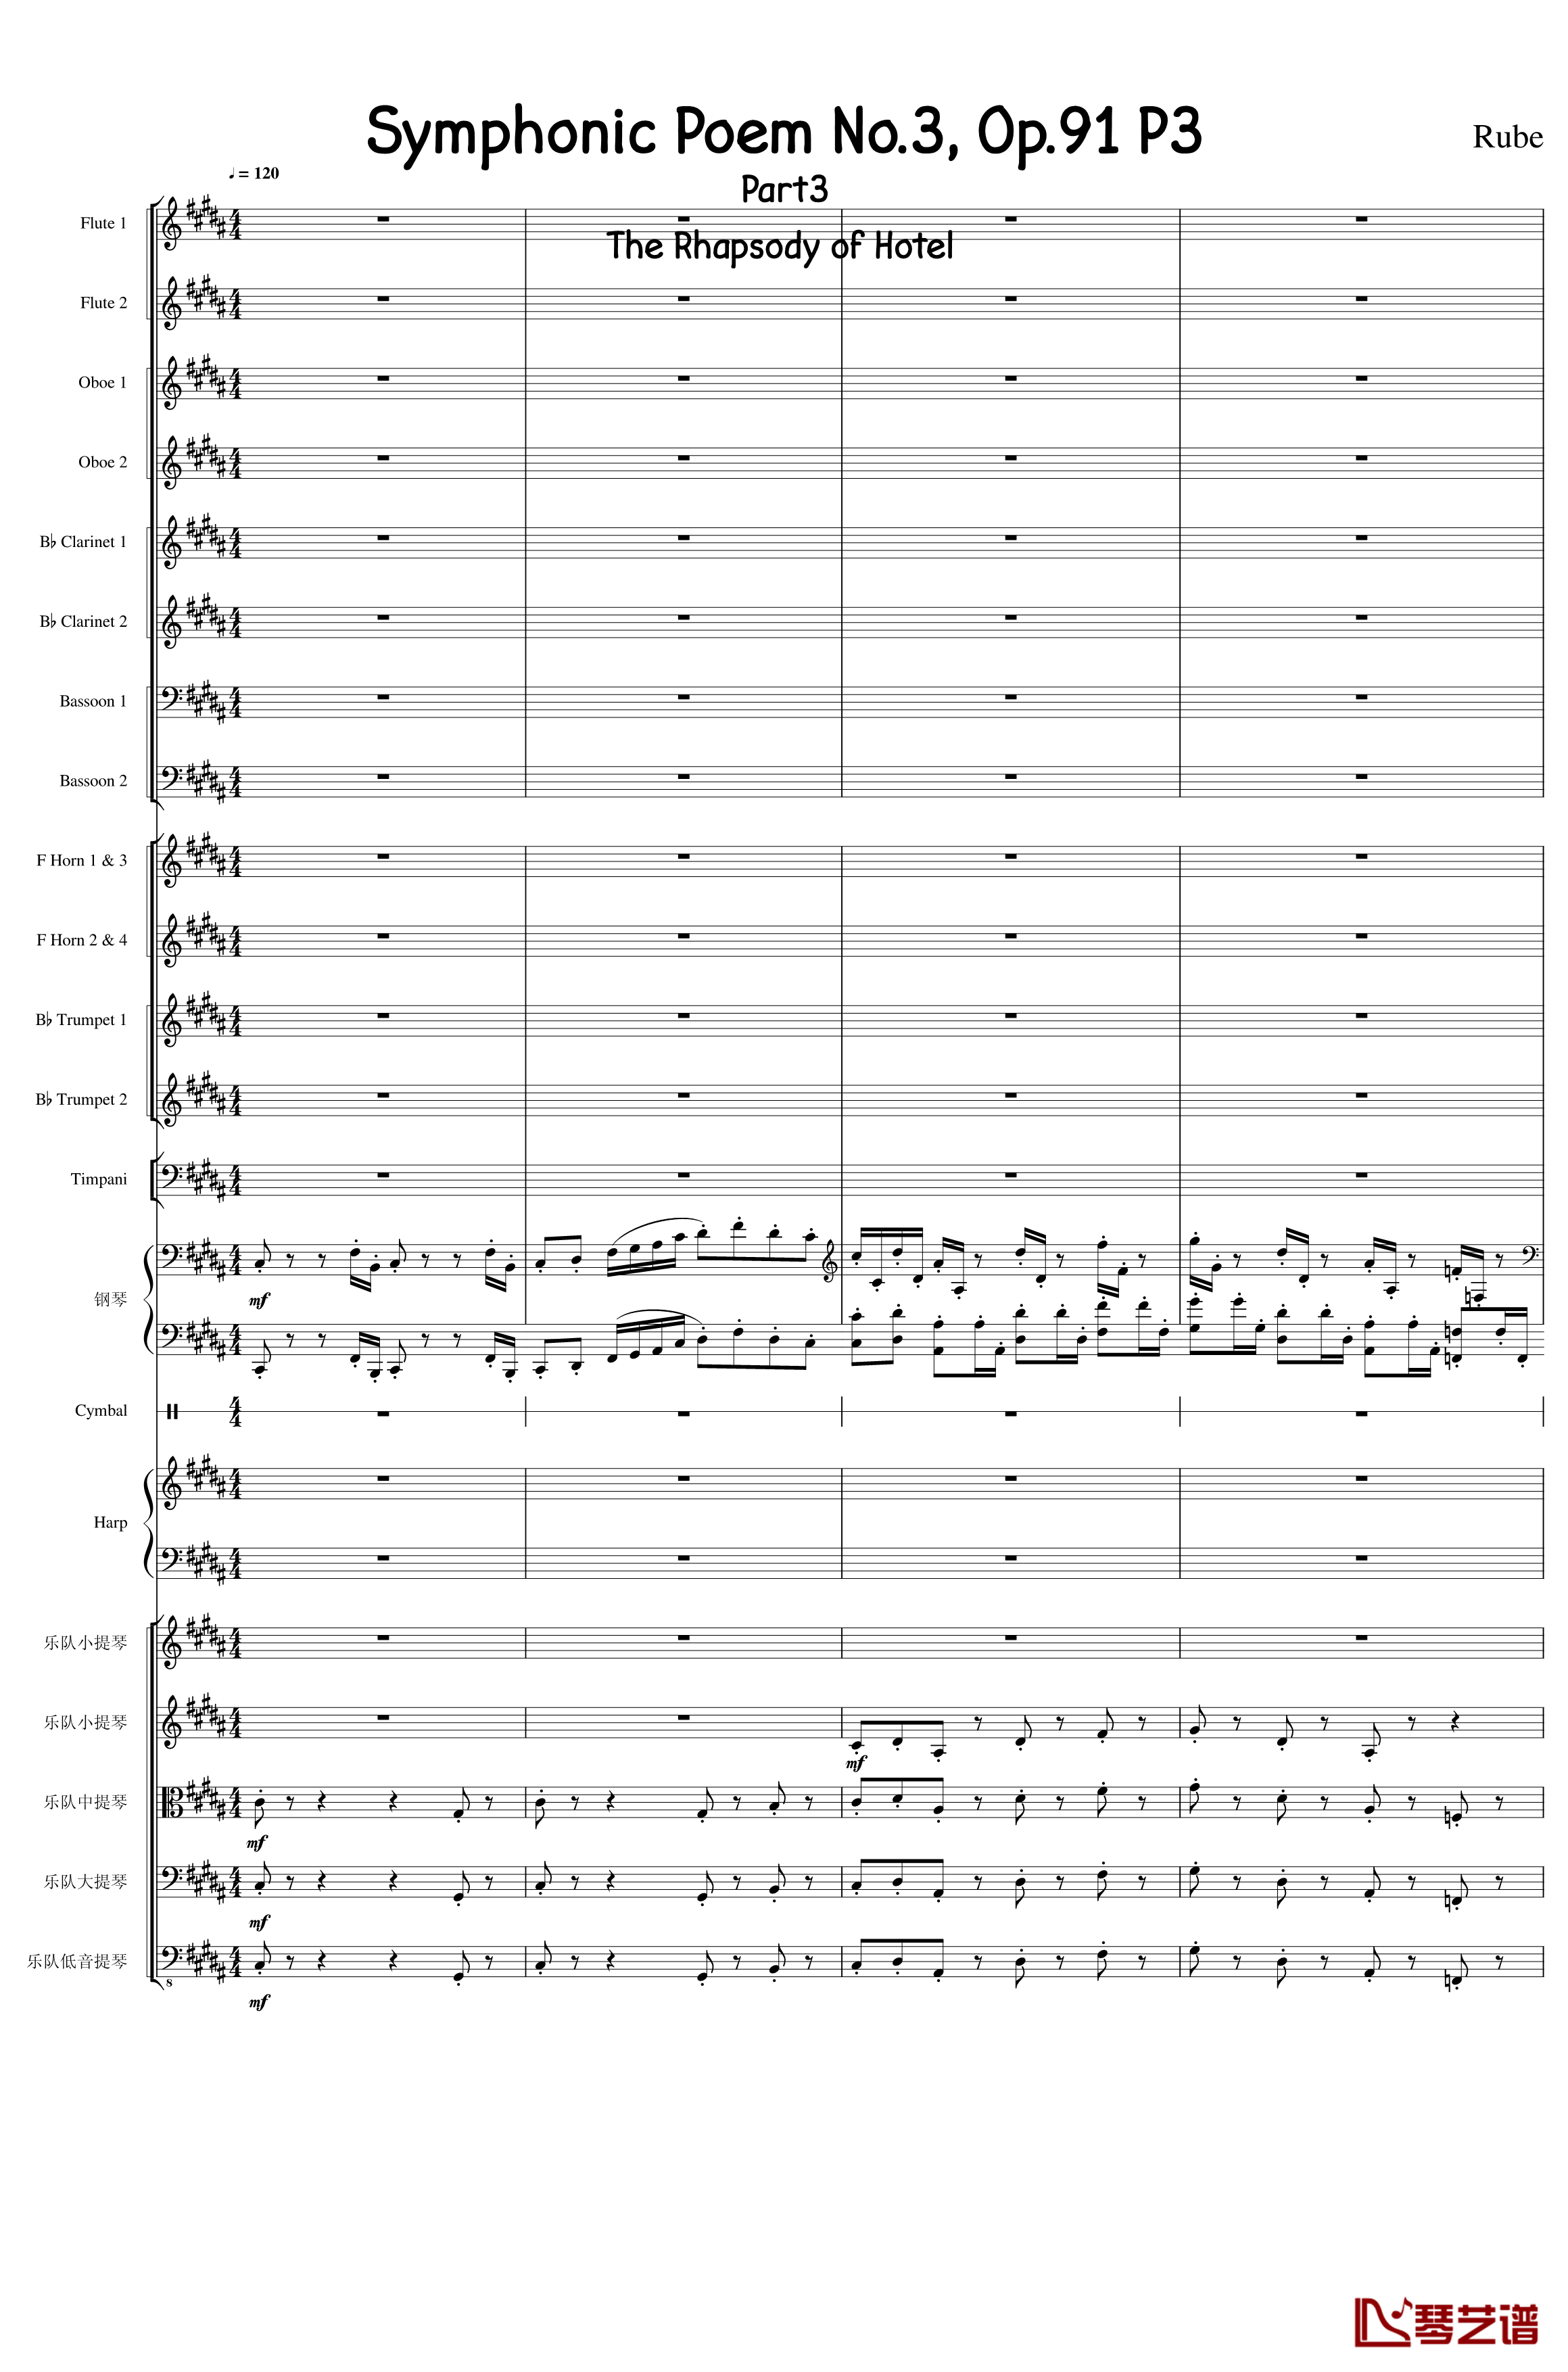 Symphonic Poem No.3, Op.91 Part 3钢琴谱-一个球1